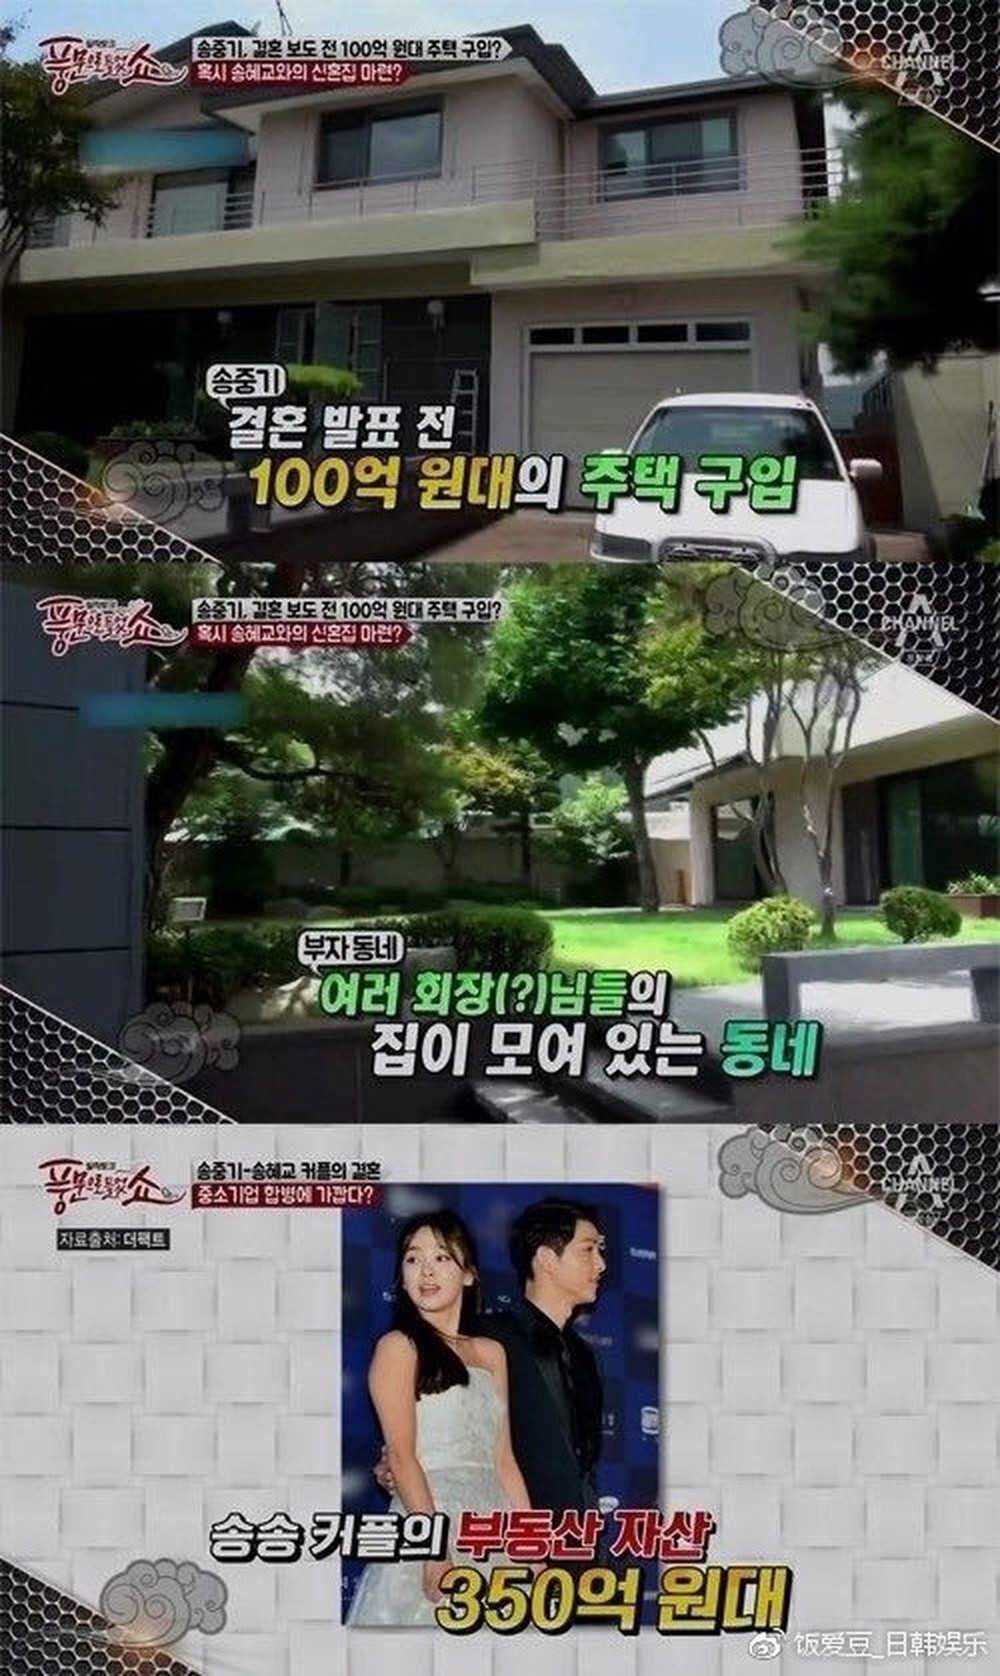 Trước khi ly hôn, cặp đôi Song Joong Ki và Song Hye Kyo đã từng có một tổ ấm xa hoa hơn 200 tỷ ở khu giàu có bậc nhất của Seoul - Ảnh 14.